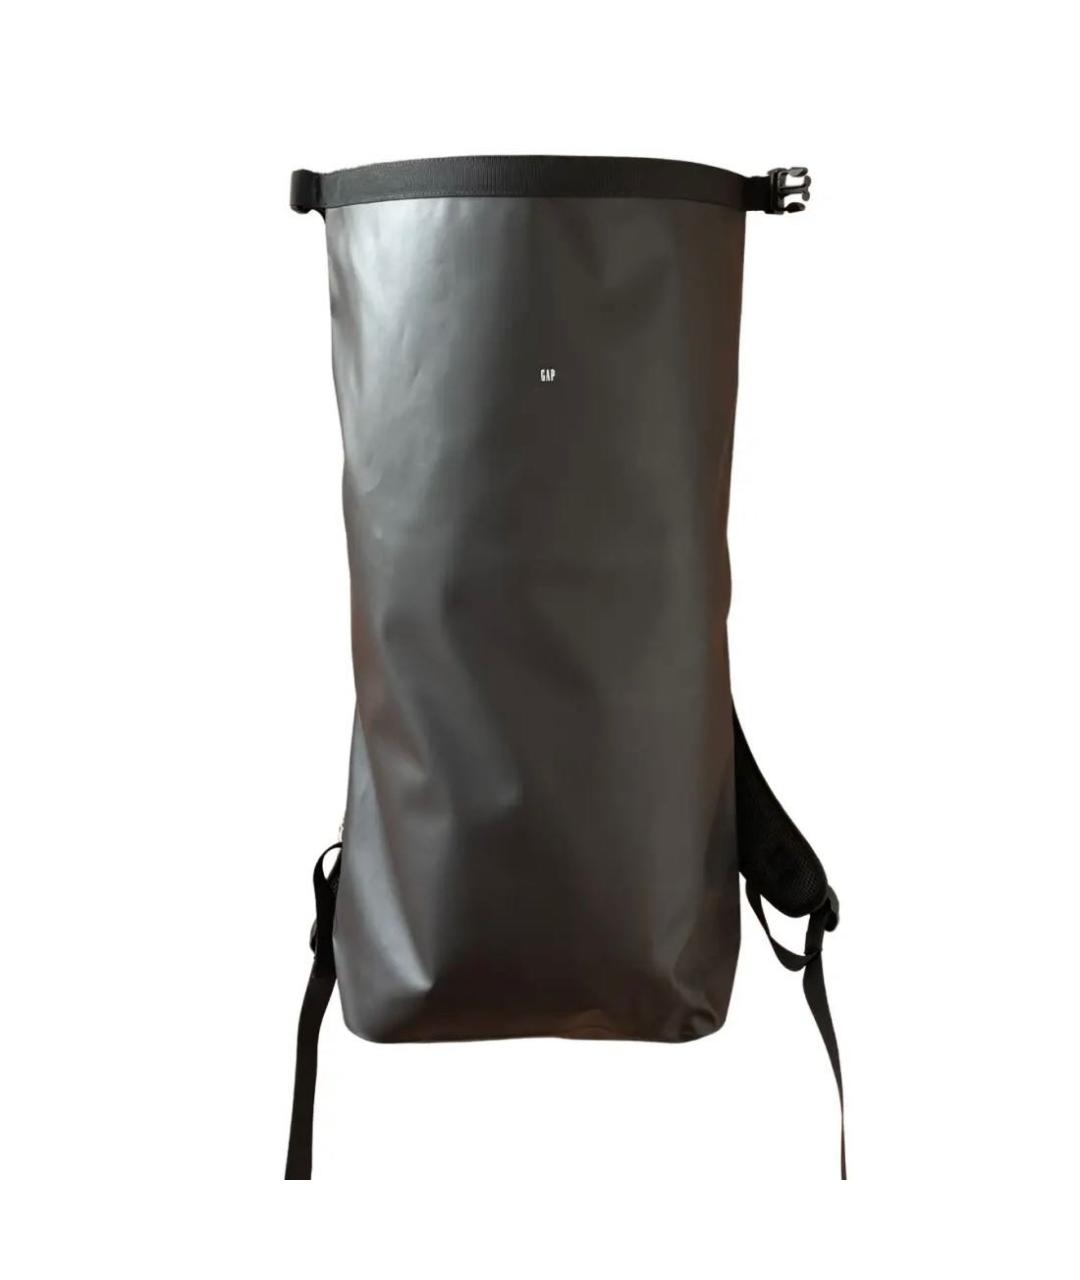 YEEZY Черный синтетический рюкзак, фото 1